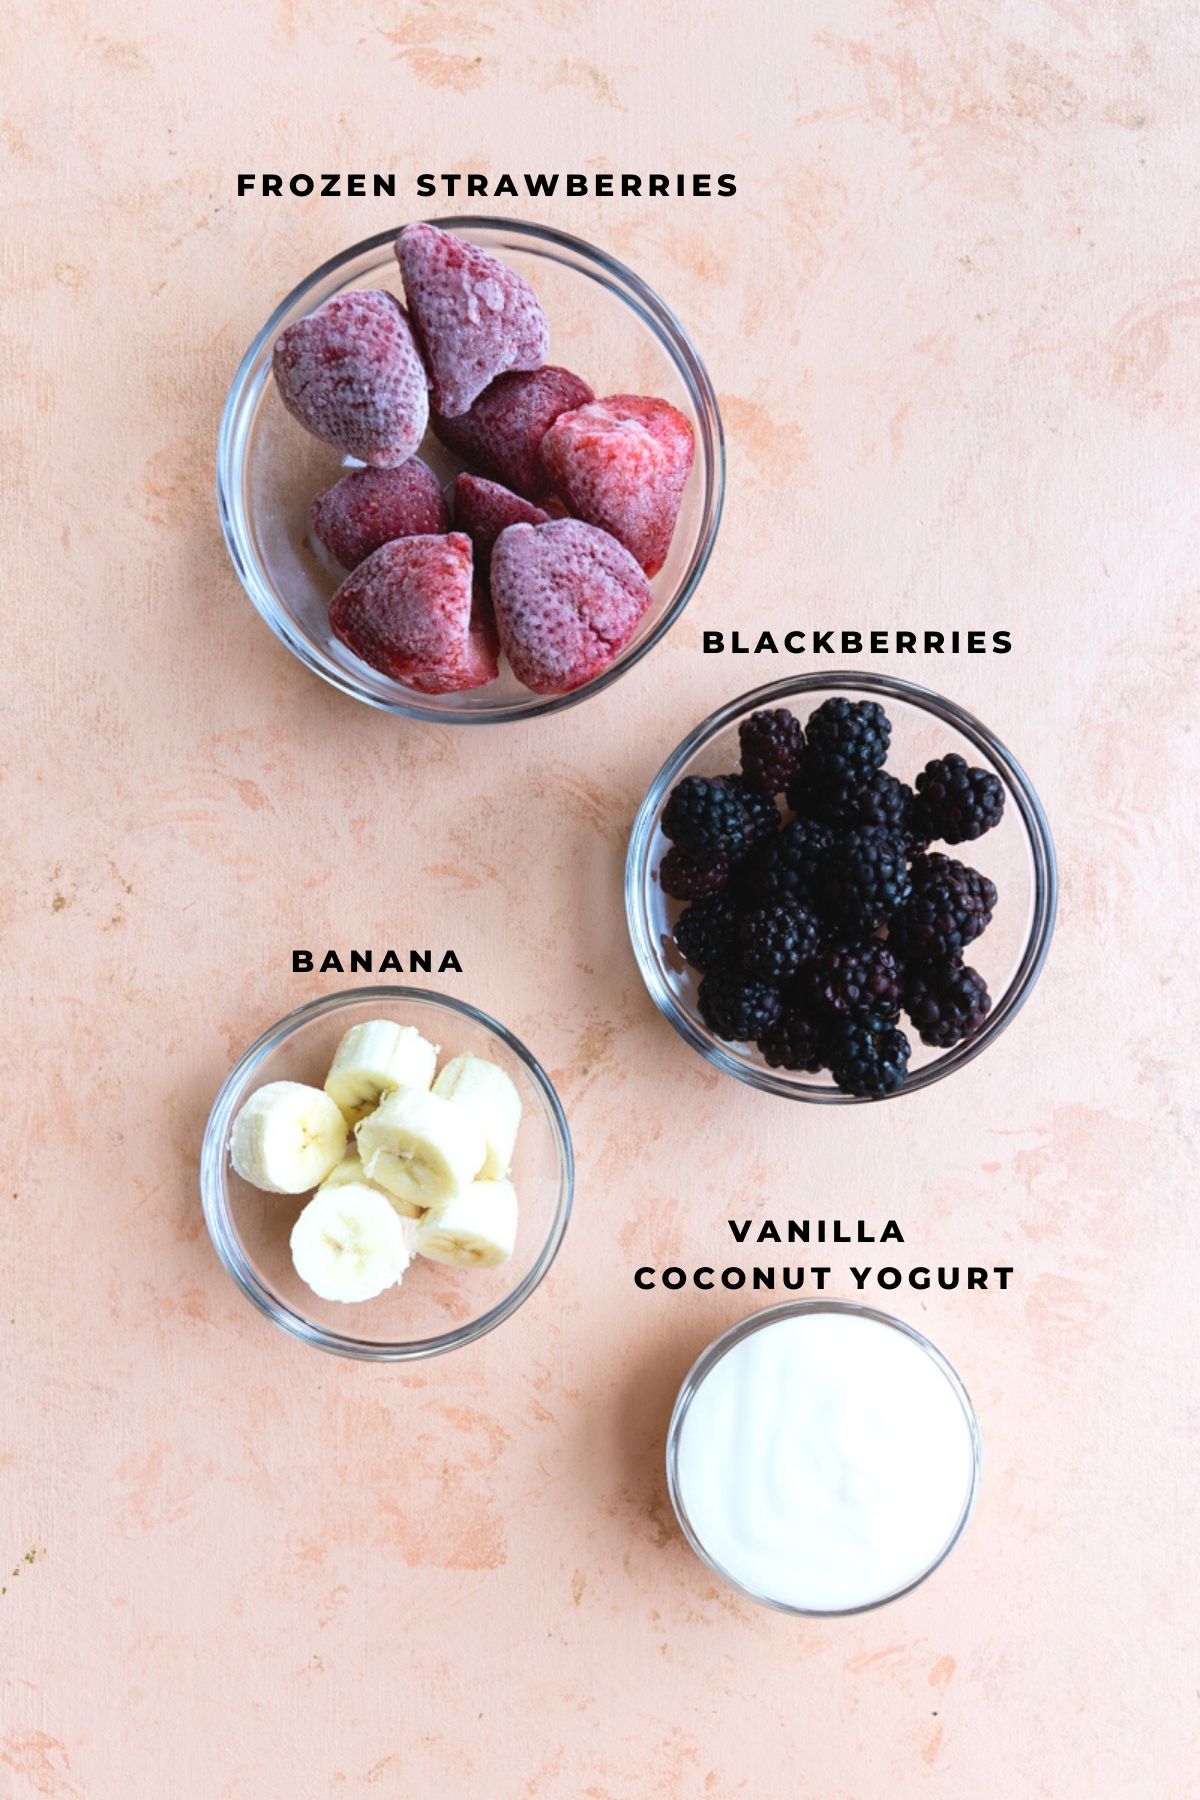 Strawberries, blackberries, bananas, and coconut yogurt in bowls.